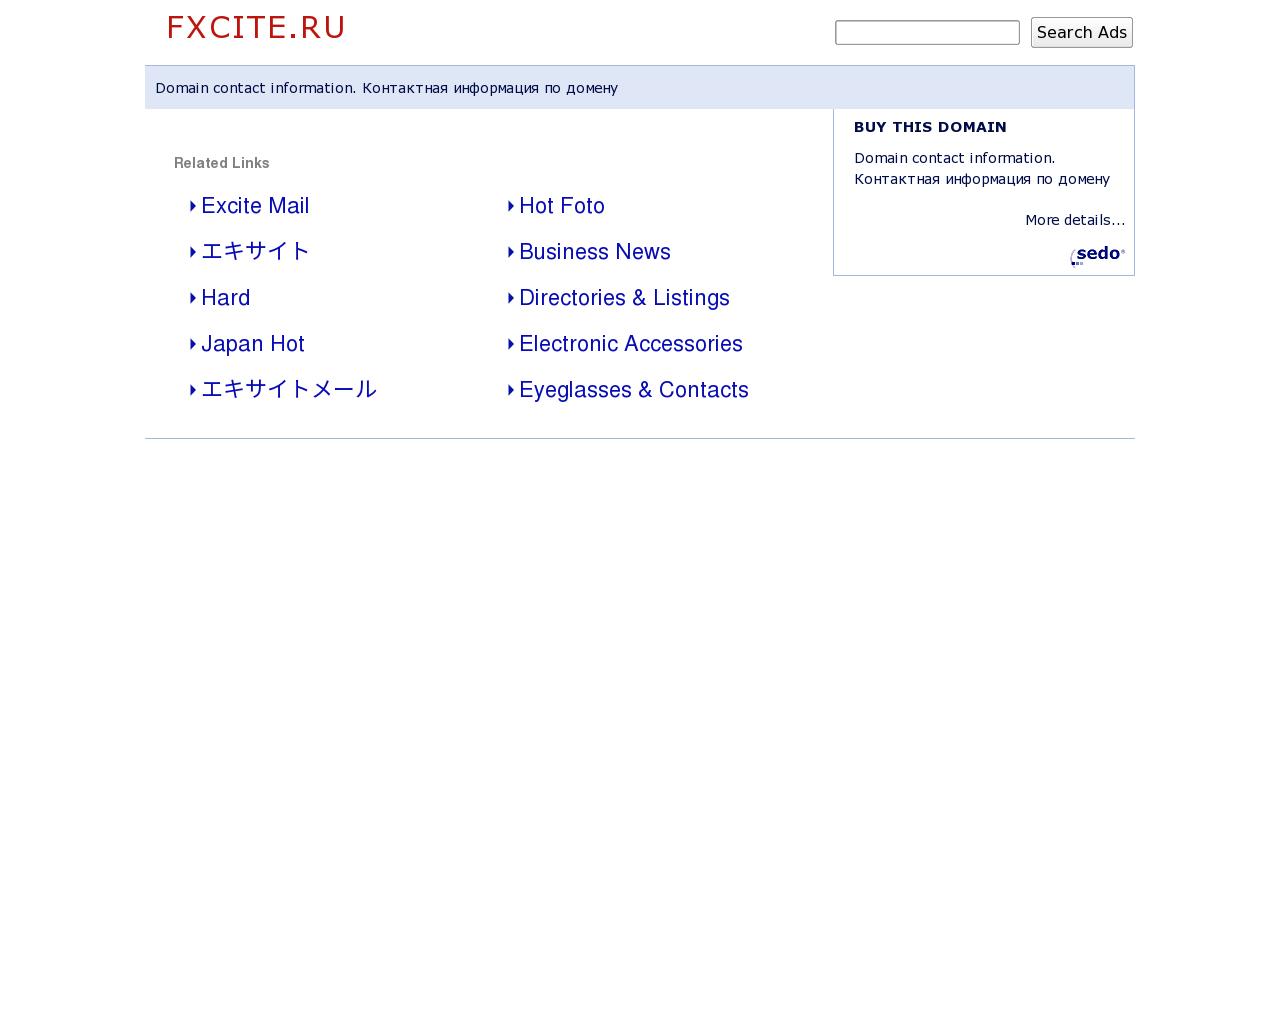 Изображение сайта fxcite.ru в разрешении 1280x1024